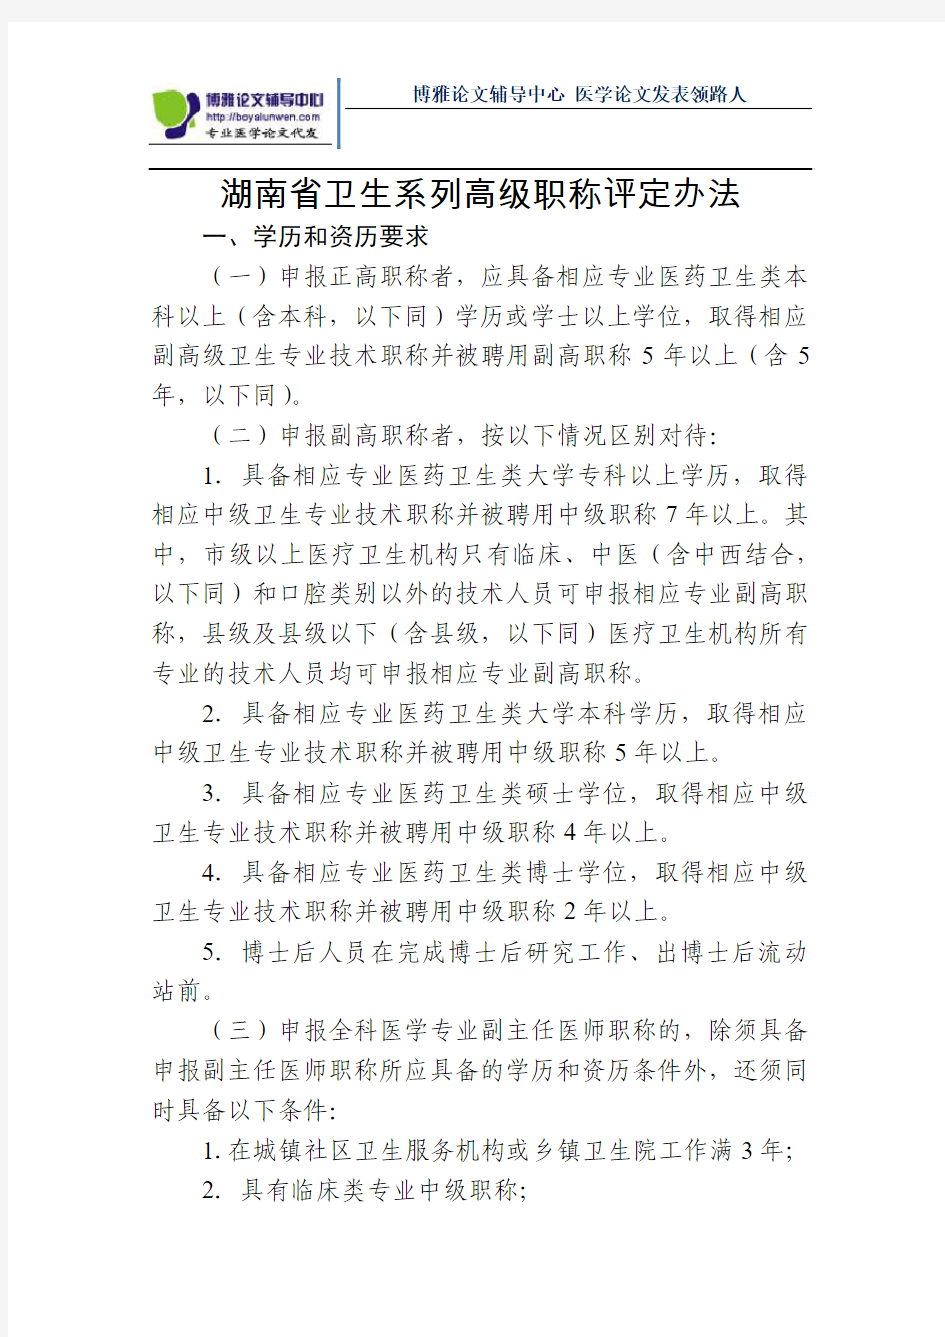 湖南省卫生系列高级职称评定办法